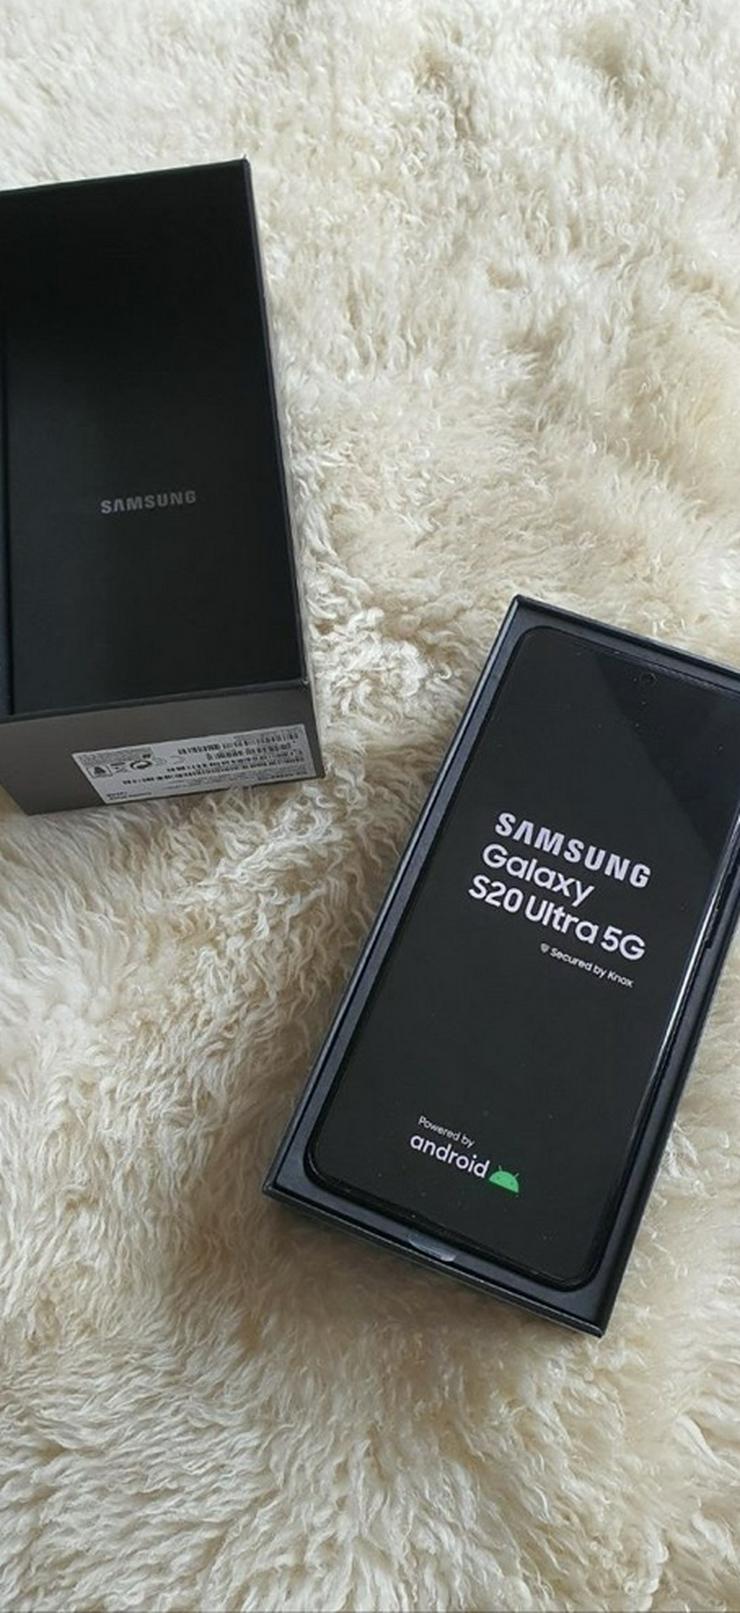 Bild 2: Samsung Galaxy S20 ultra